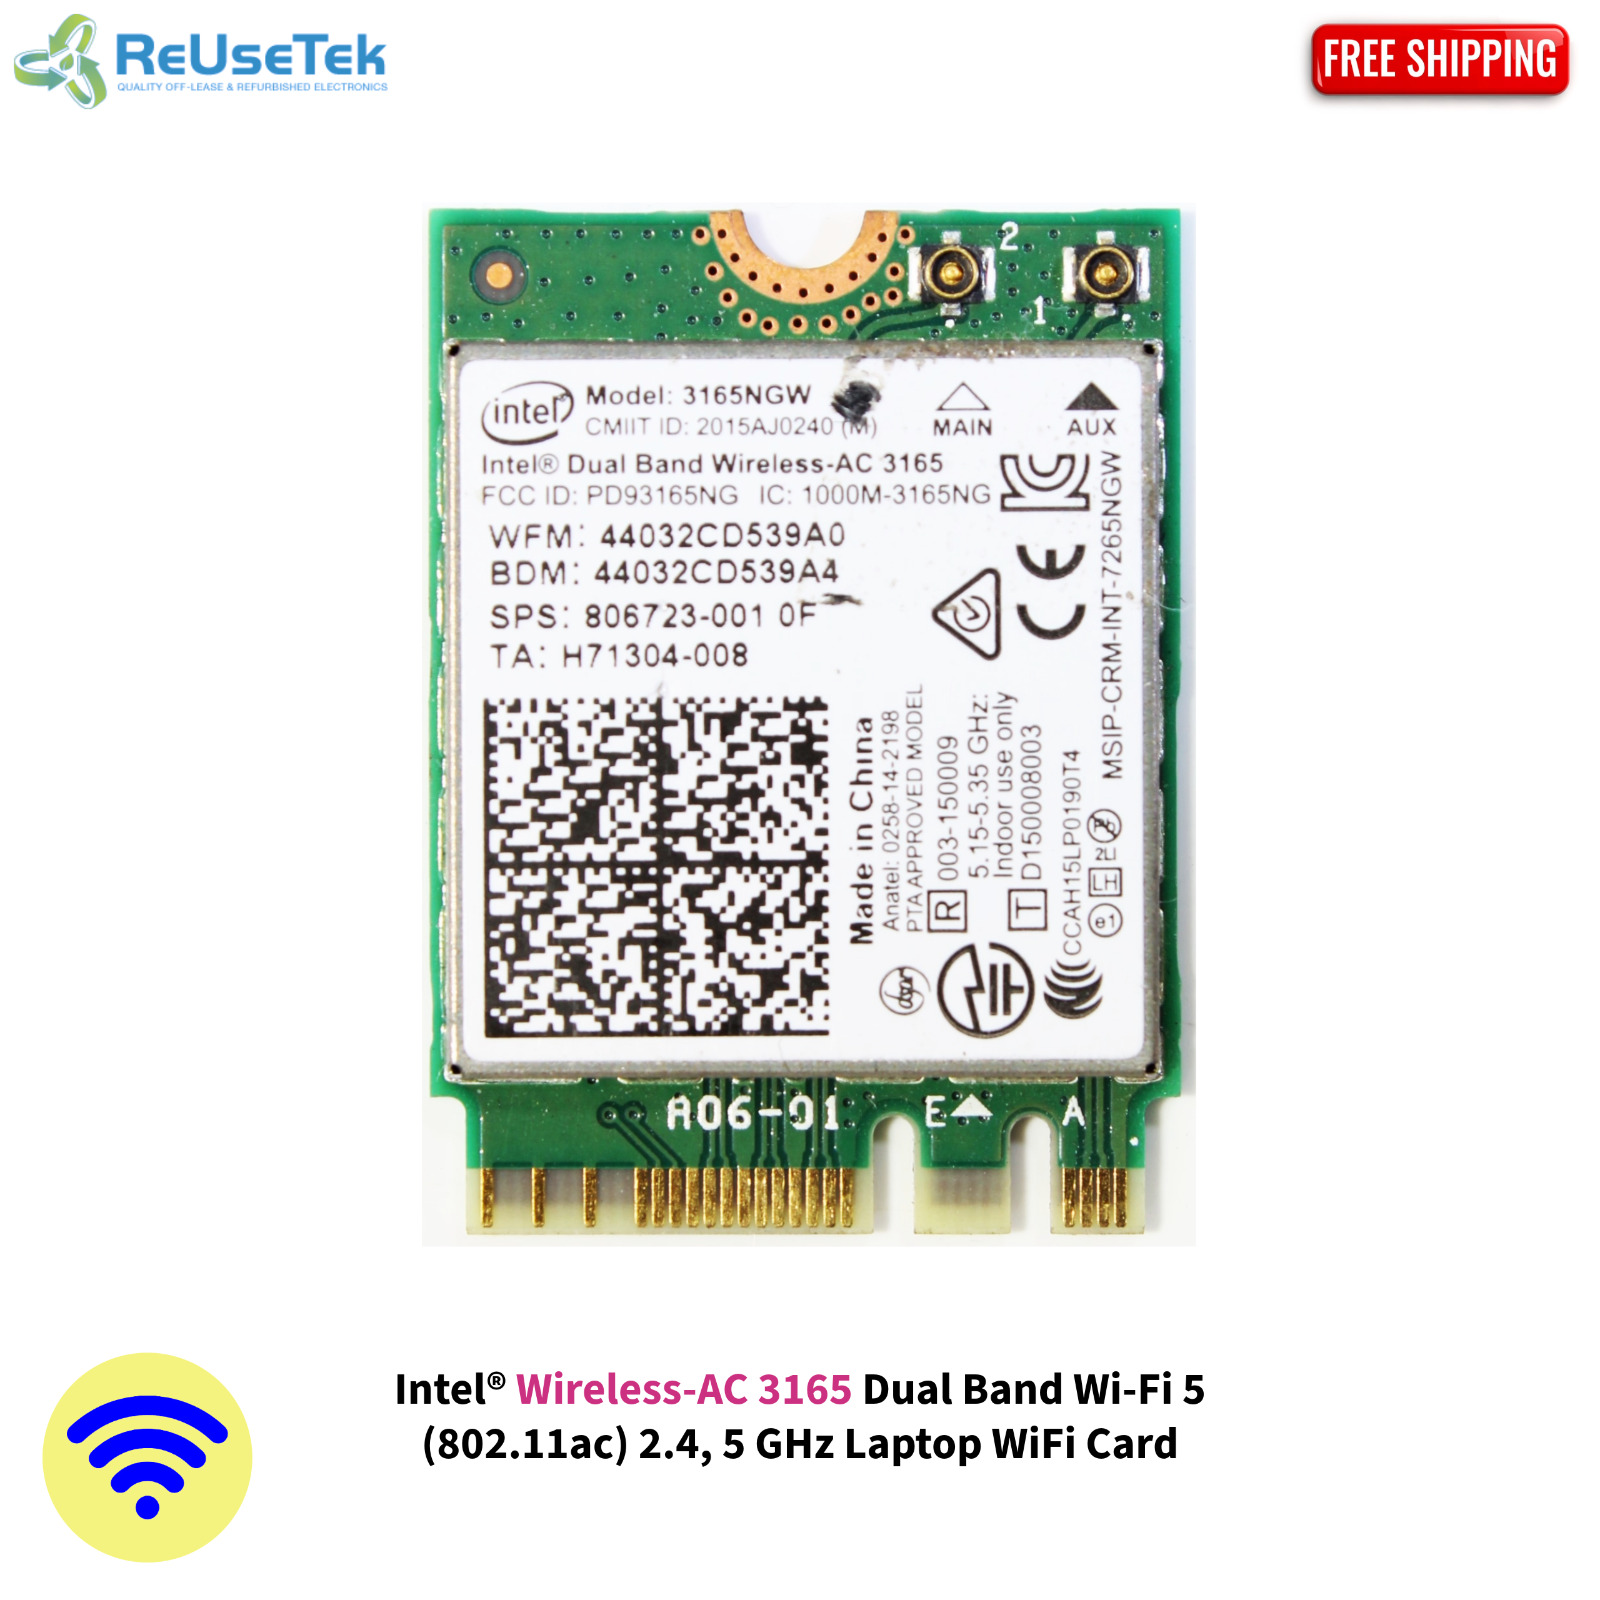 Intel® Wireless-AC 3165NGW Dual Band Wi-Fi 5 (802.11ac) 2.4, 5GHz WiFi Card